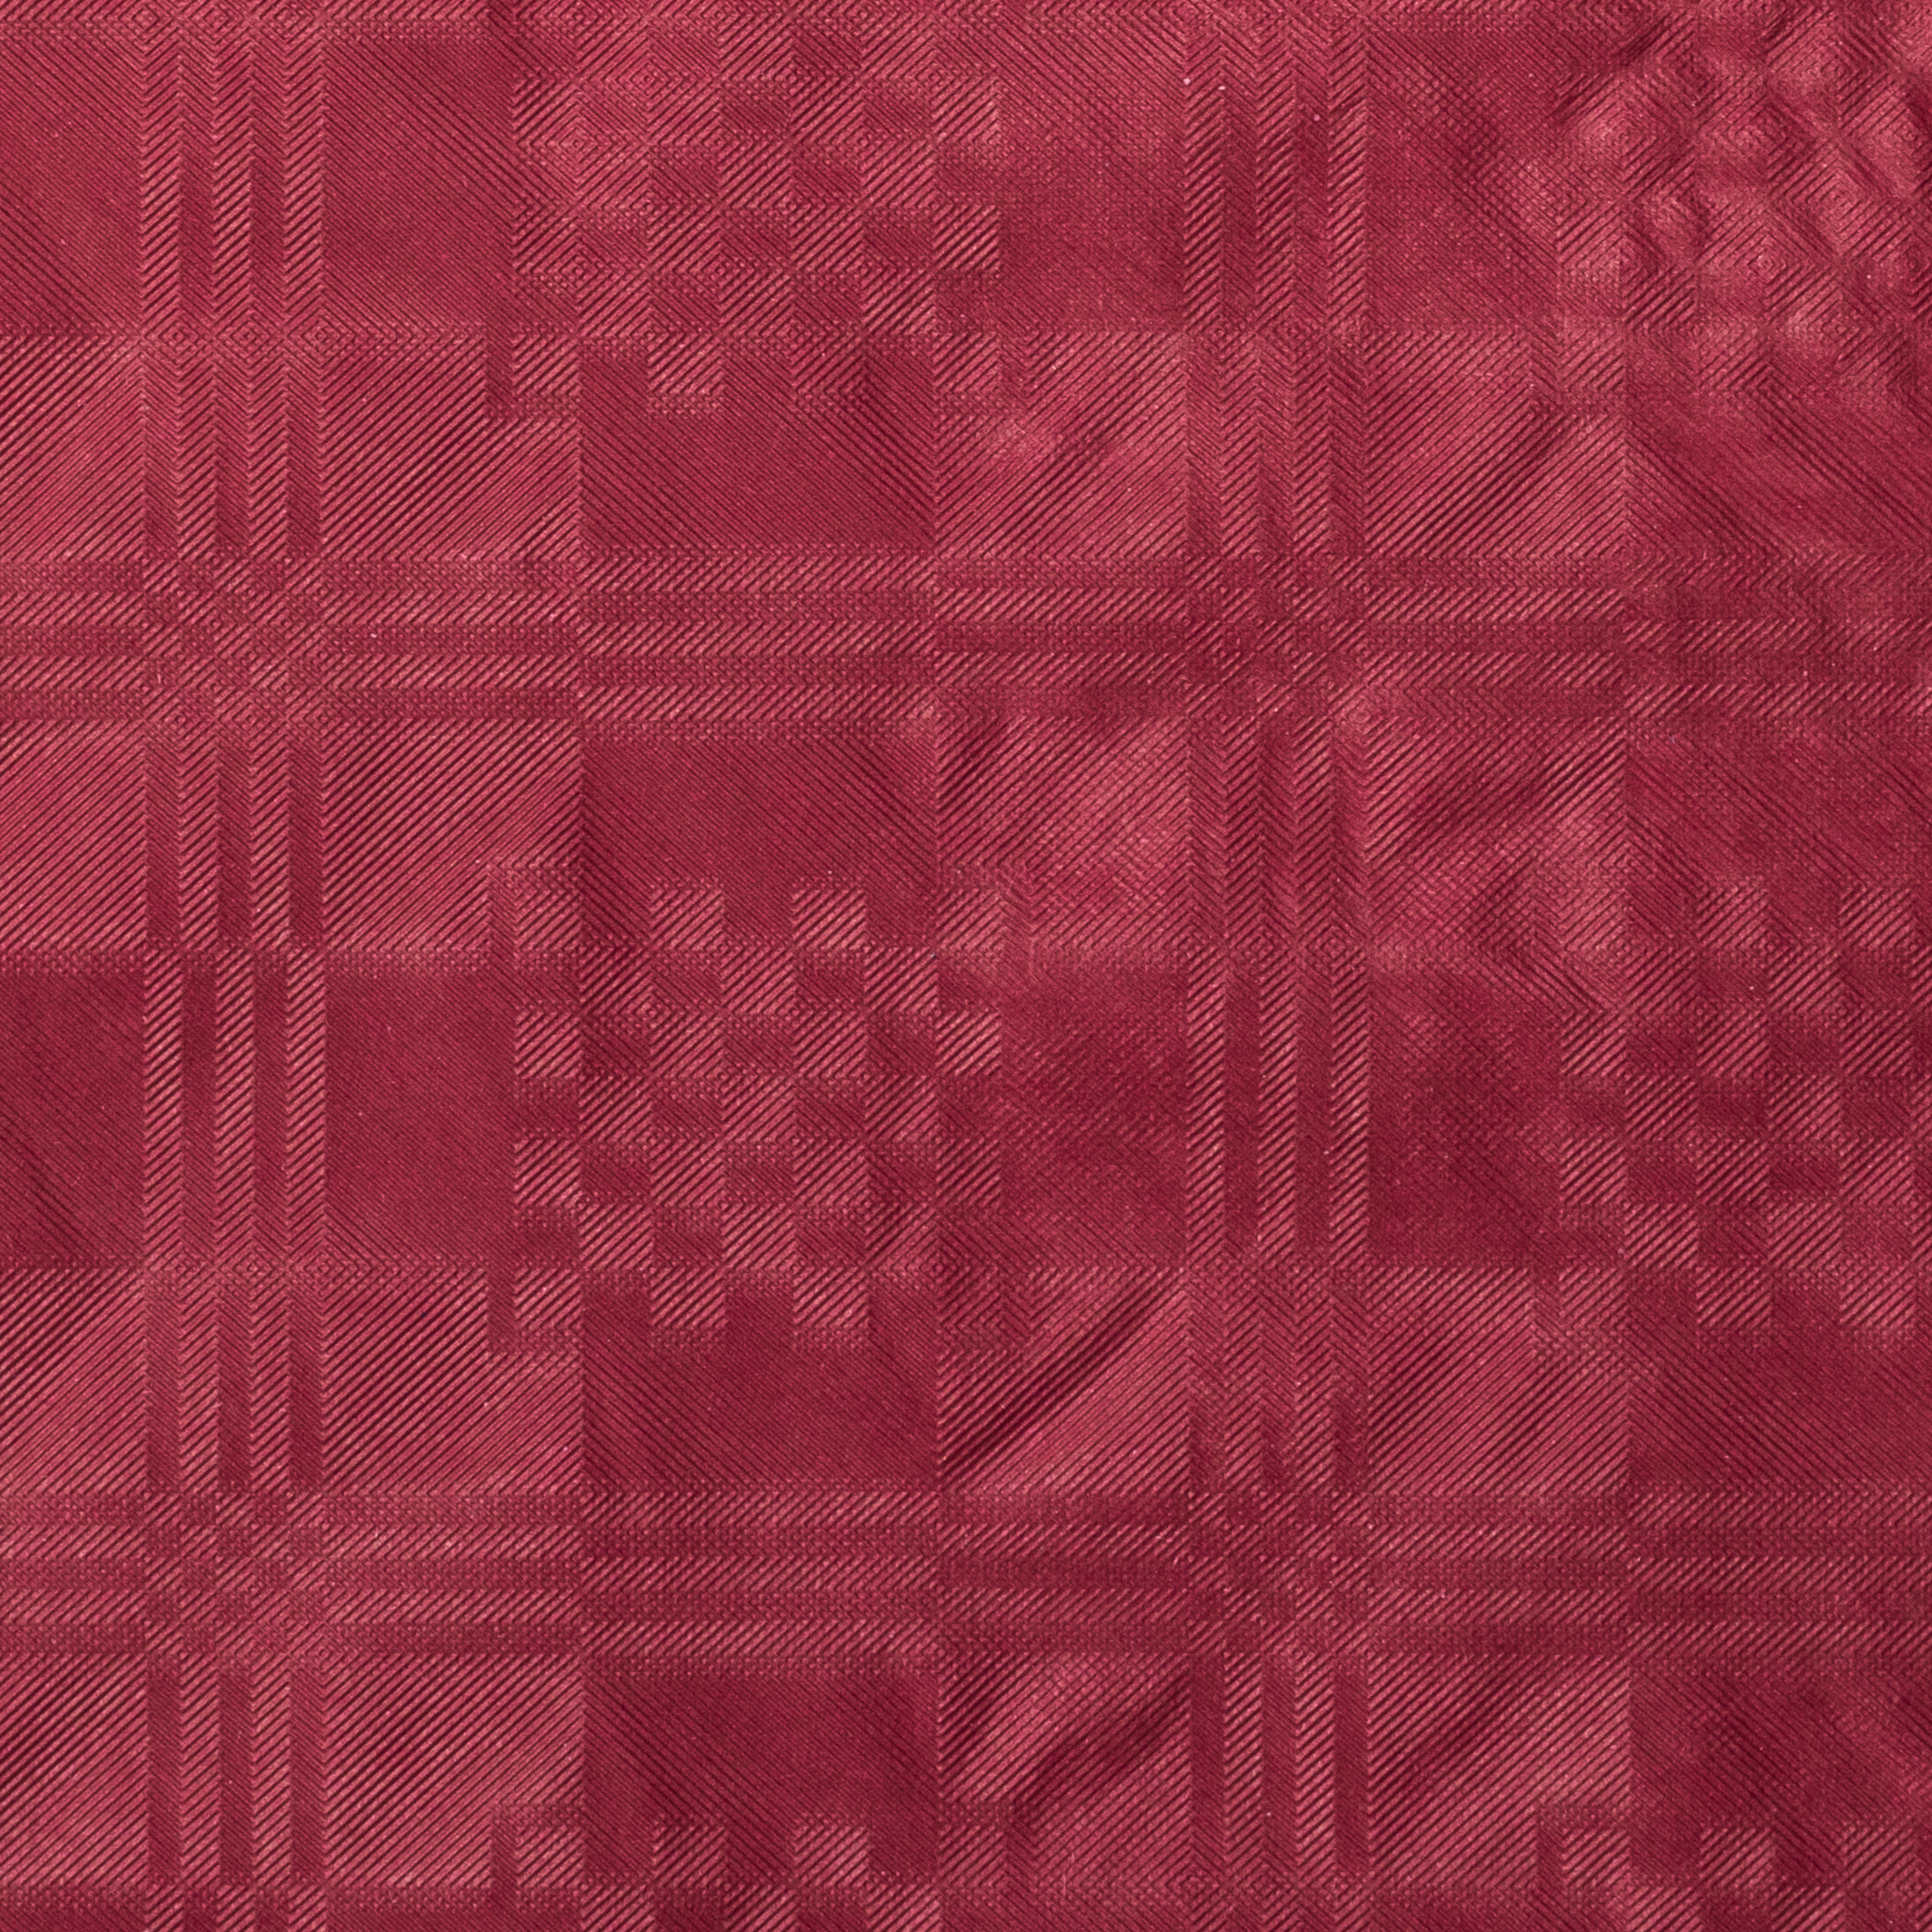 Paper tablecloth bordeaux, 1 x 10 m